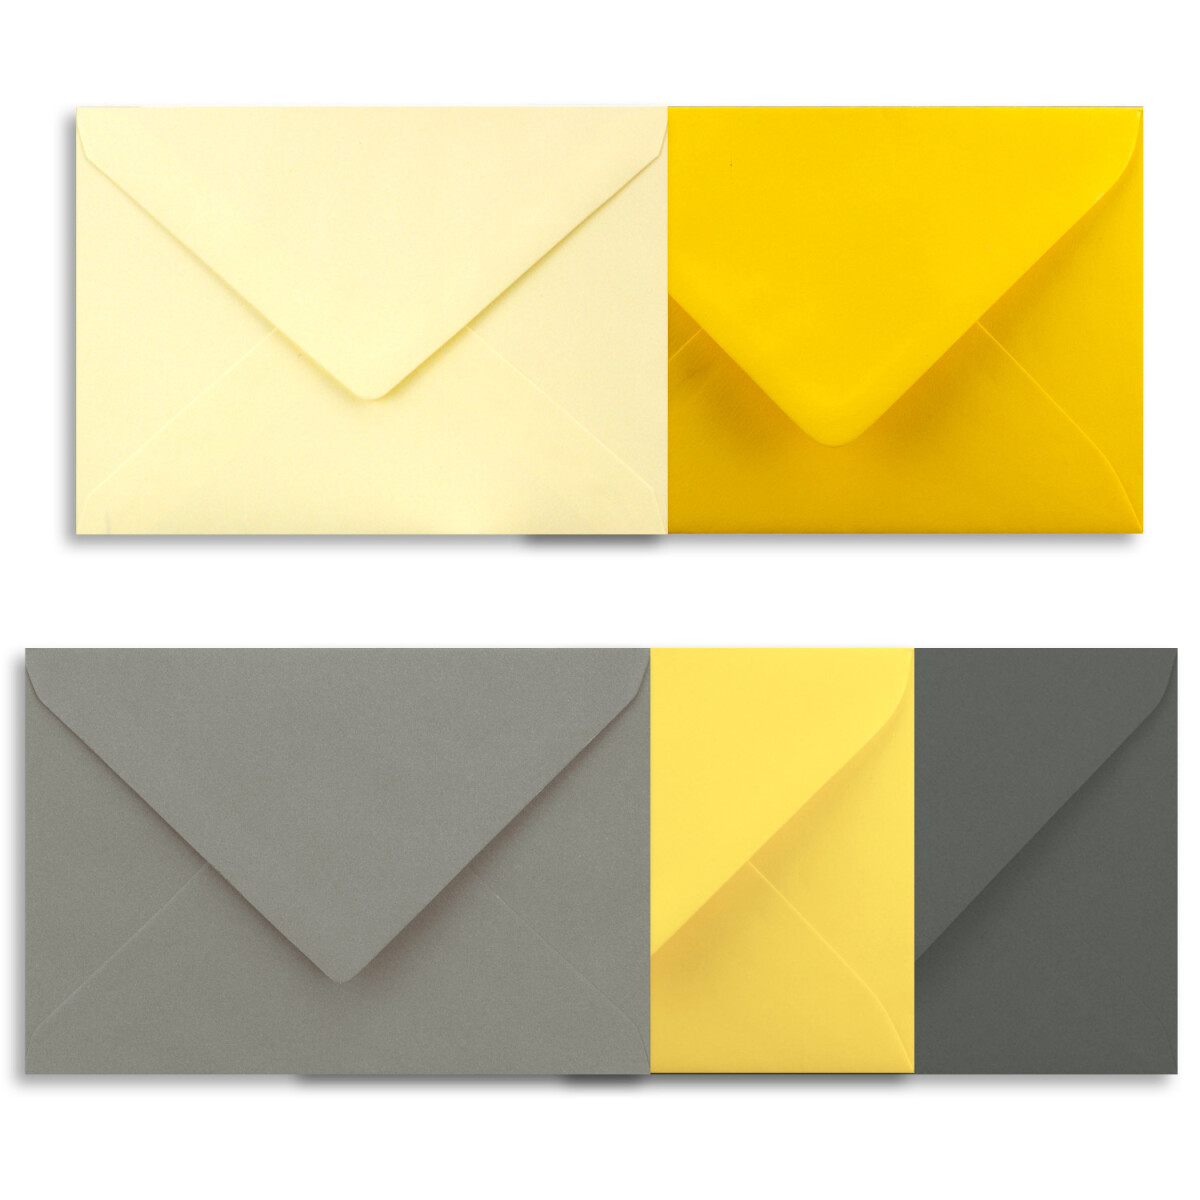 25x Farbige Karten blanko mit passendem Umschlag und Einlegeblätter in Weiß in DIN A6/ DIN C6 Graue Farben ideal für Einladungen und Geschenke 